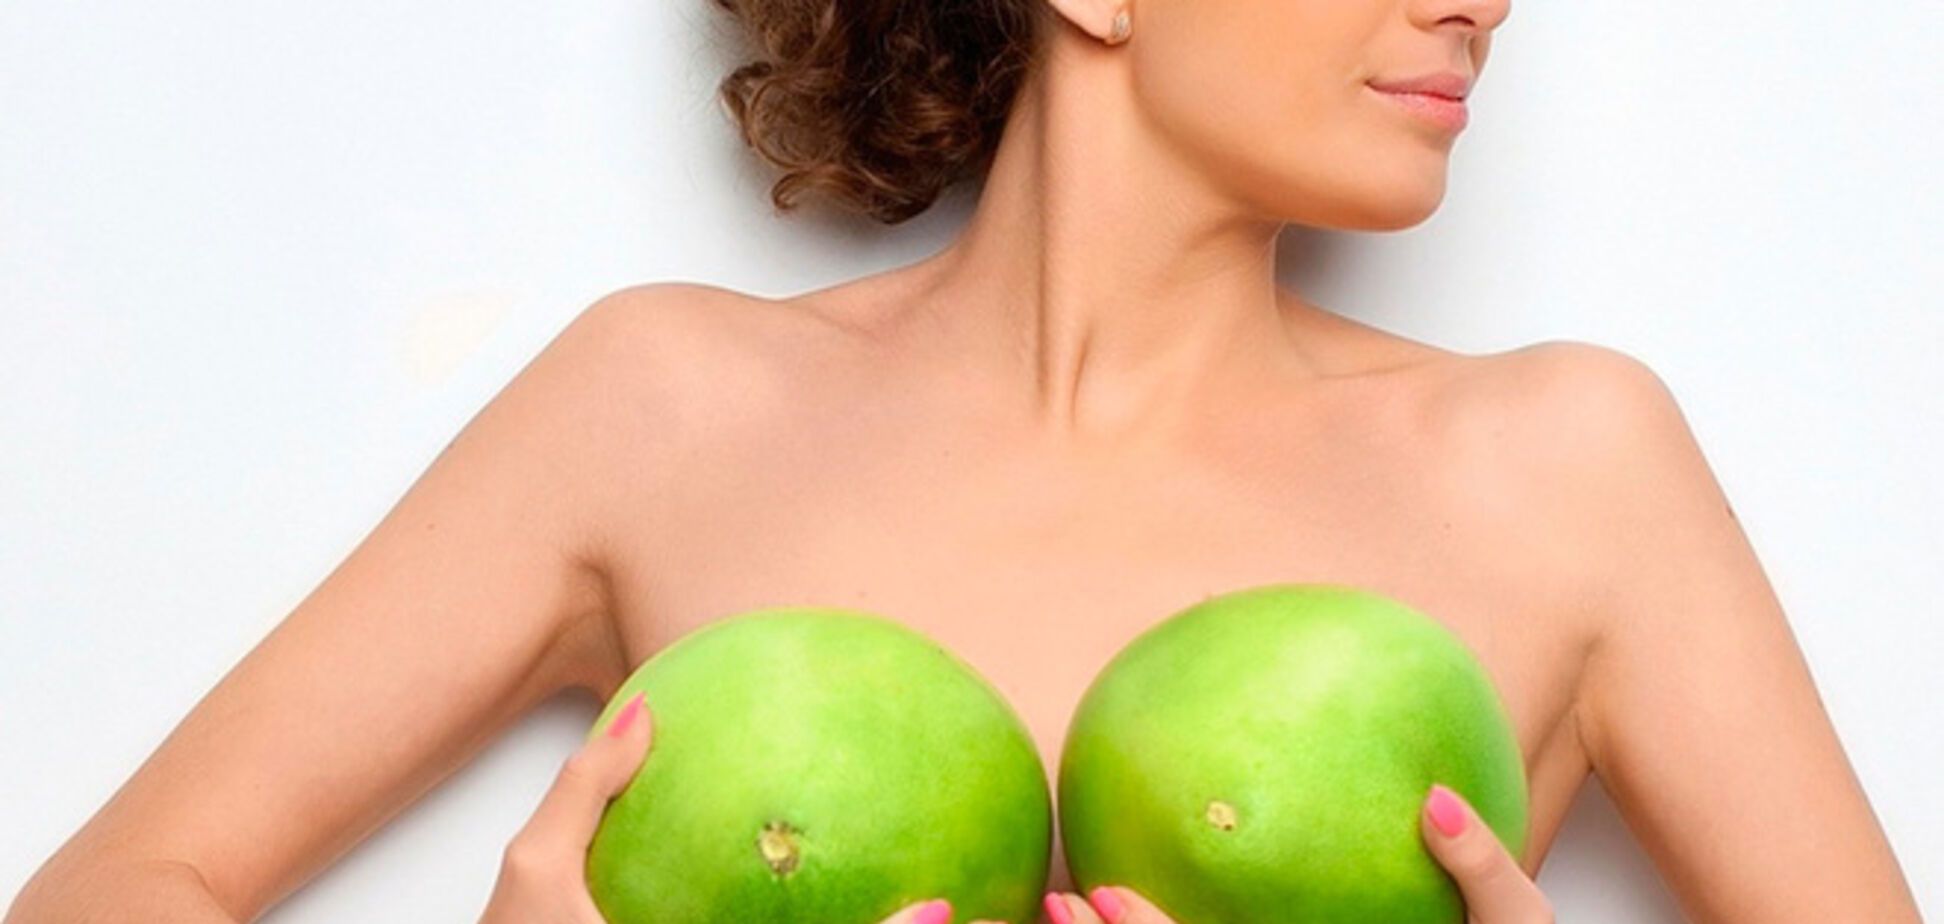 6 простых правил исследования груди